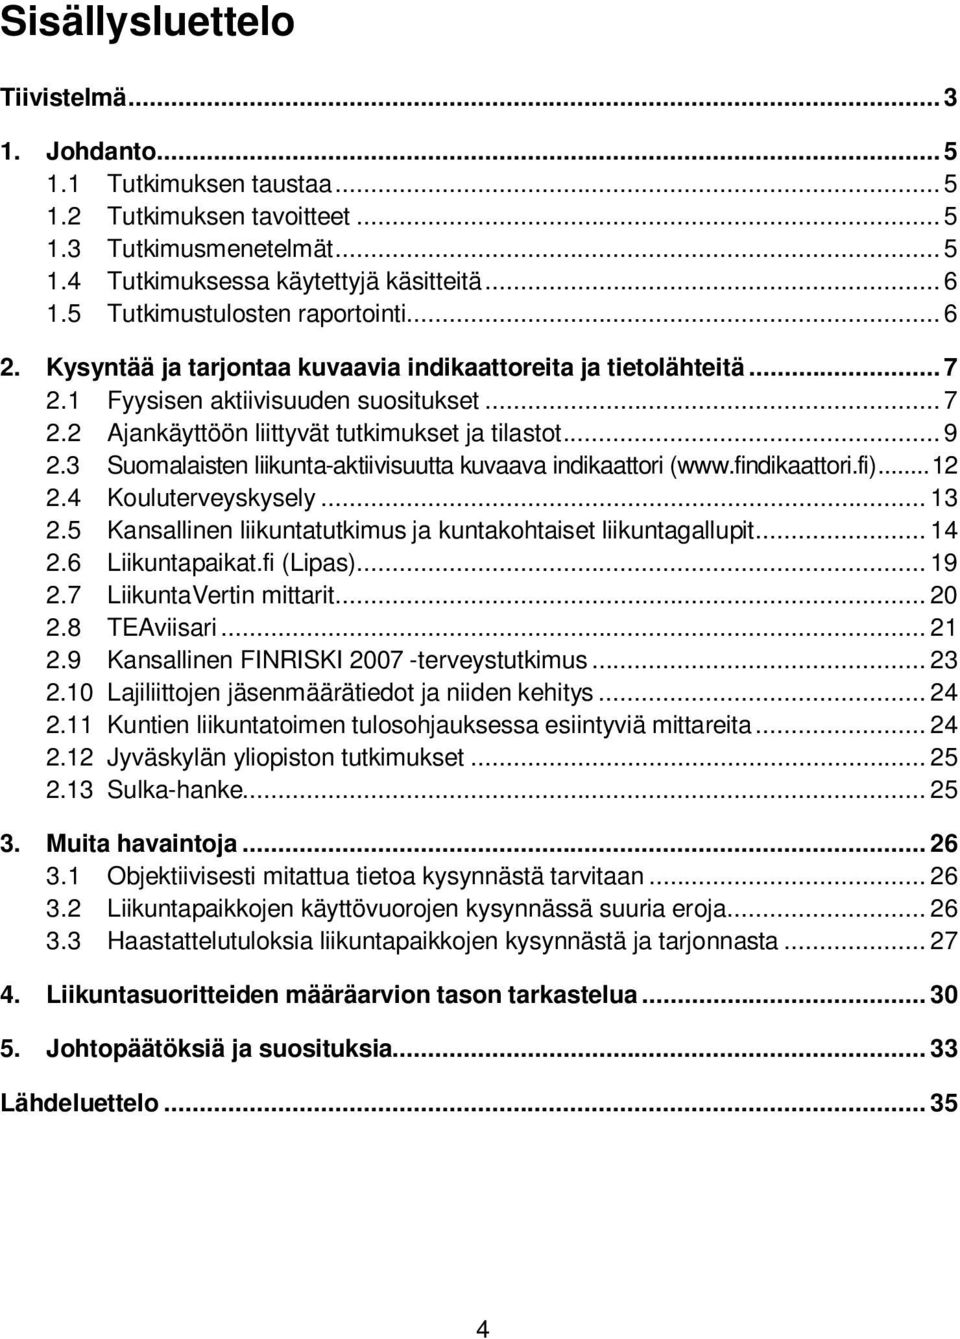 .. 9 2.3 Suomalaisten liikunta-aktiivisuutta kuvaava indikaattori (www.findikaattori.fi)... 12 2.4 Kouluterveyskysely... 13 2.5 Kansallinen liikuntatutkimus ja kuntakohtaiset liikuntagallupit... 14 2.